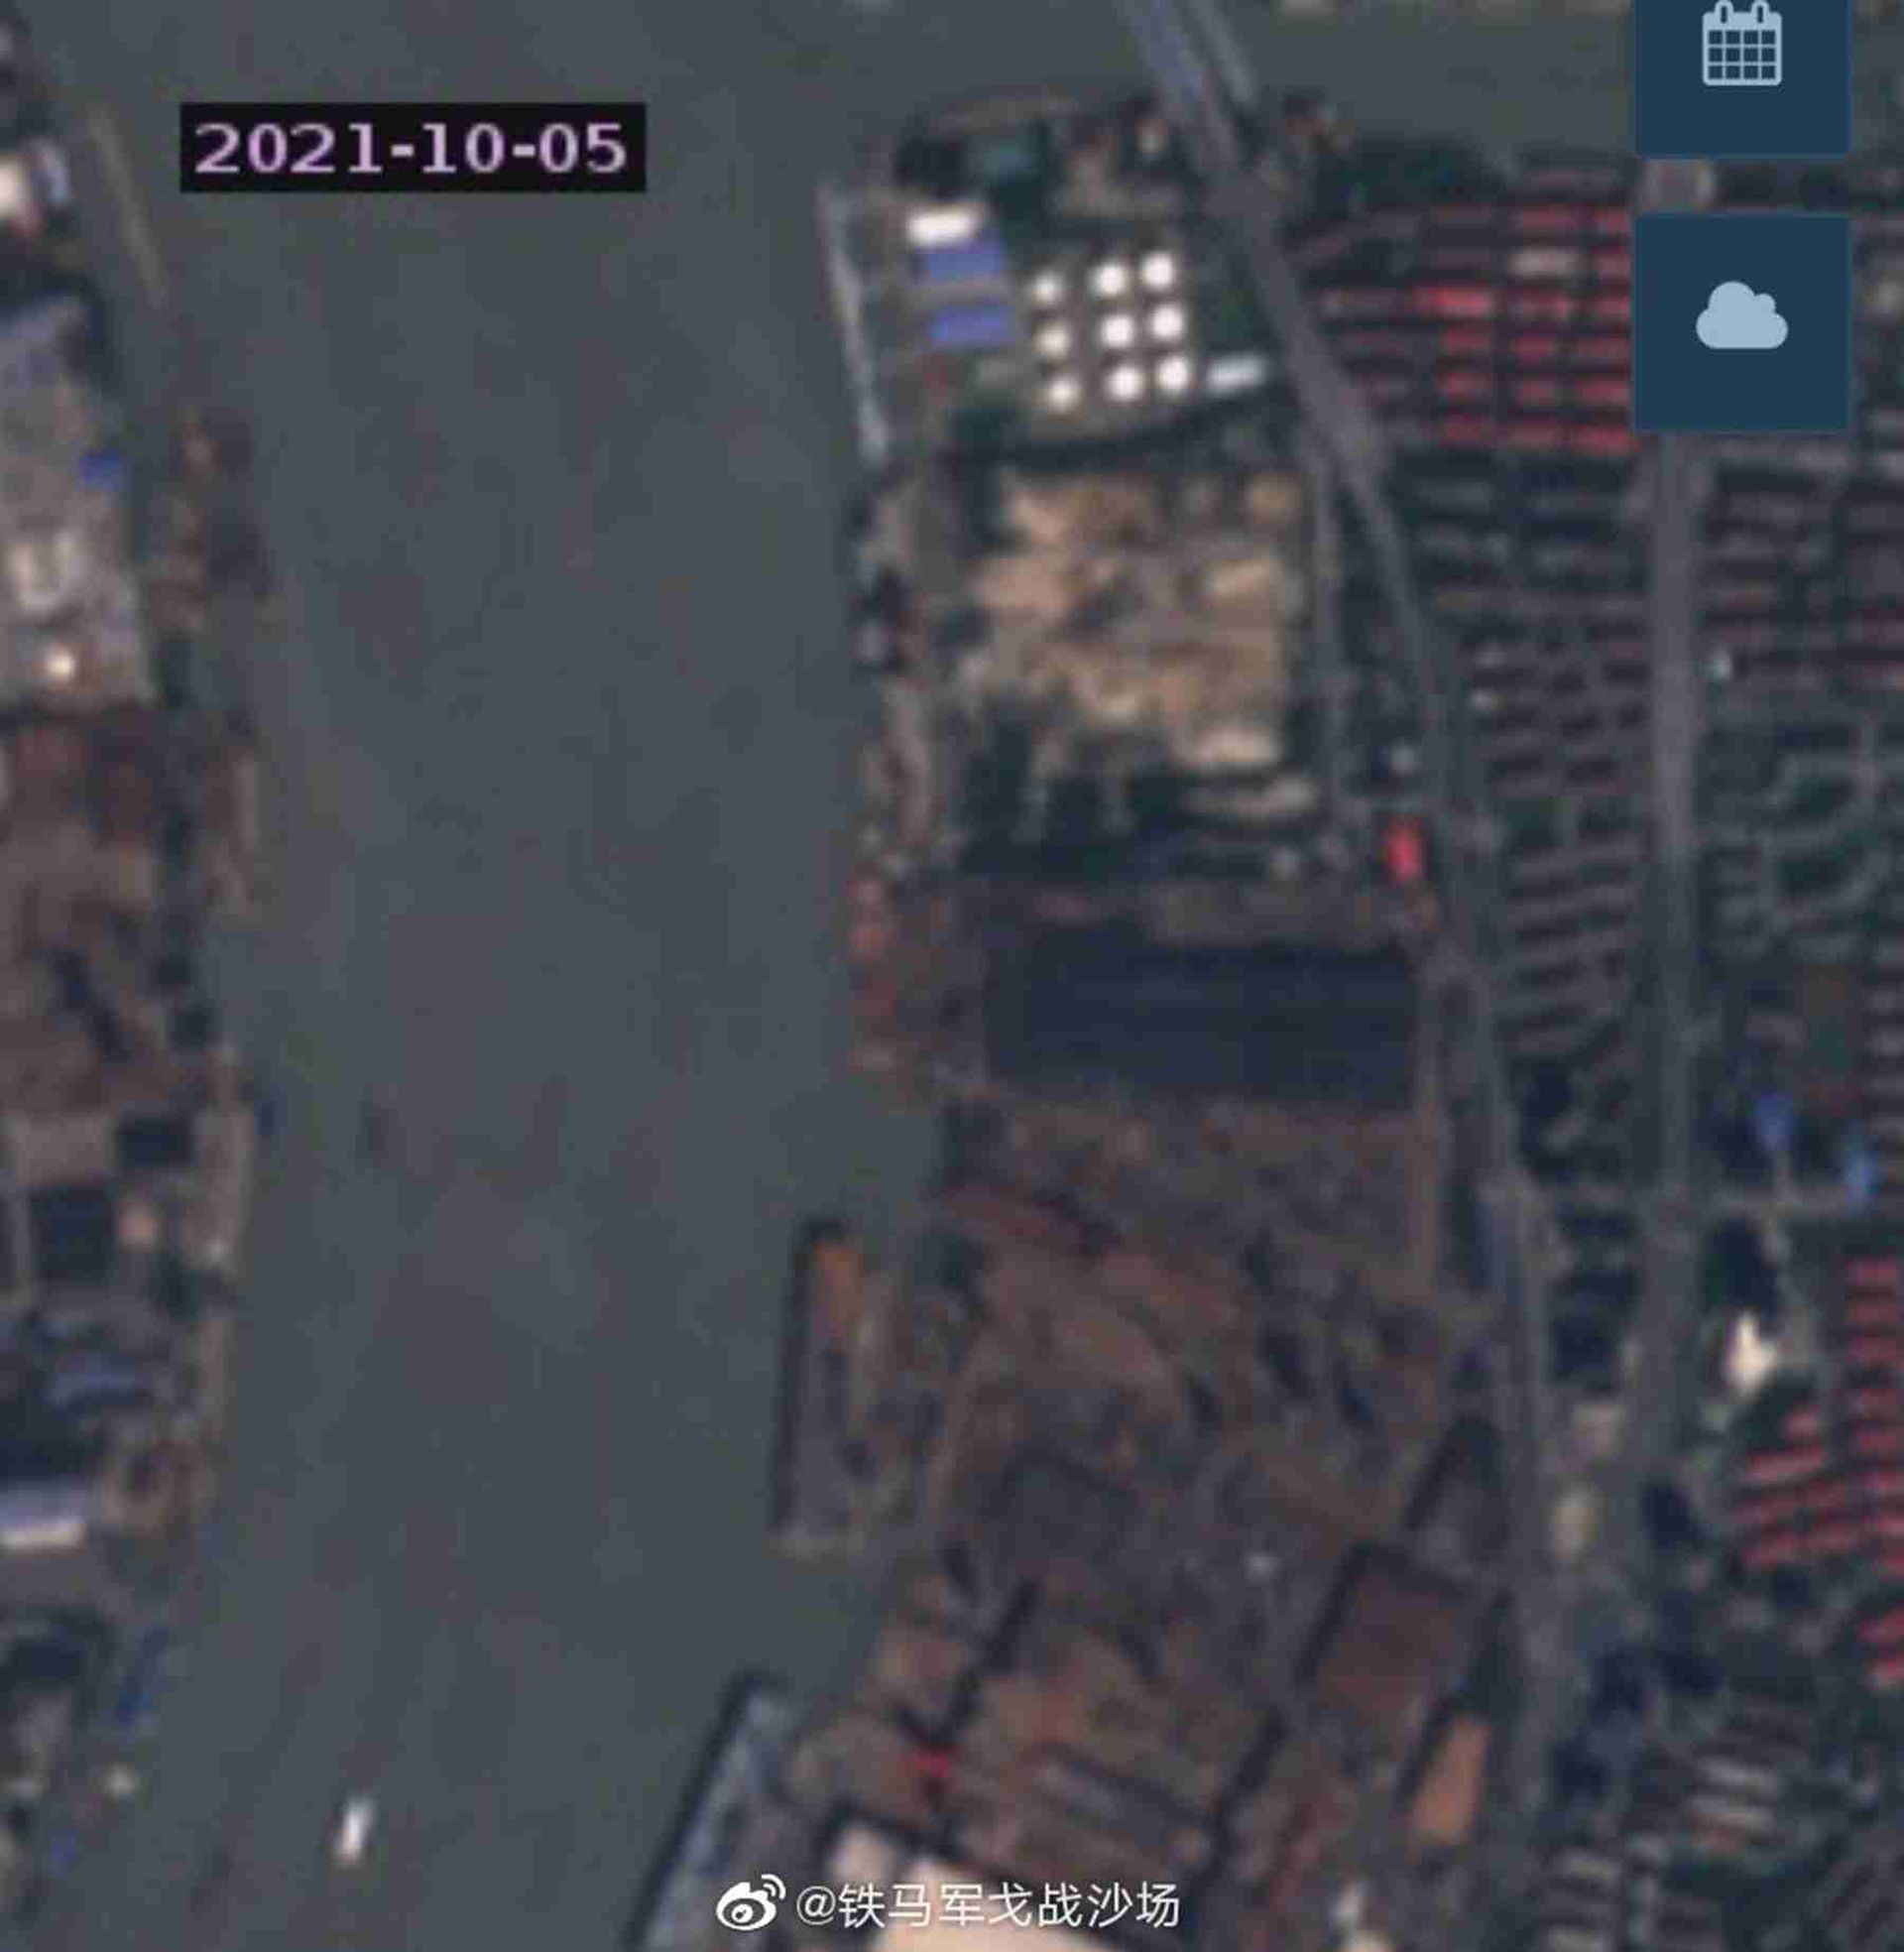 075三号舰最新卫星照。这是拍摄于10月5日的卫星照。（微博@铁马军戈战沙场）